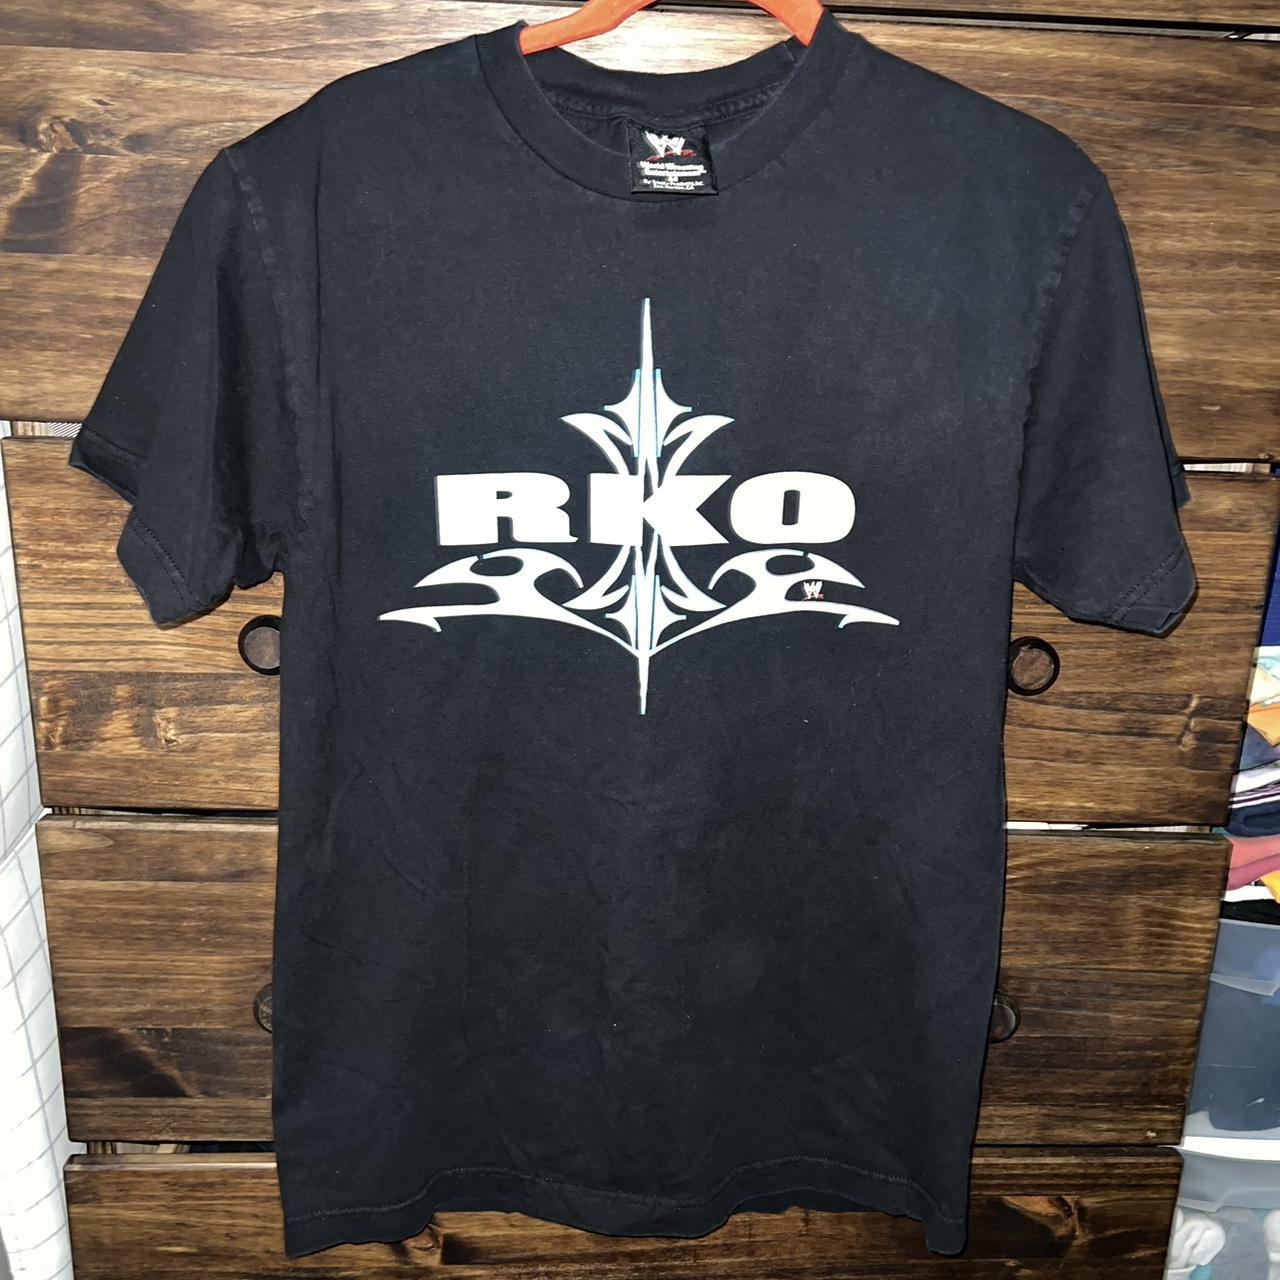 Vintage 2000s Randy Orton WWE Wrestling Sportswear RKO 